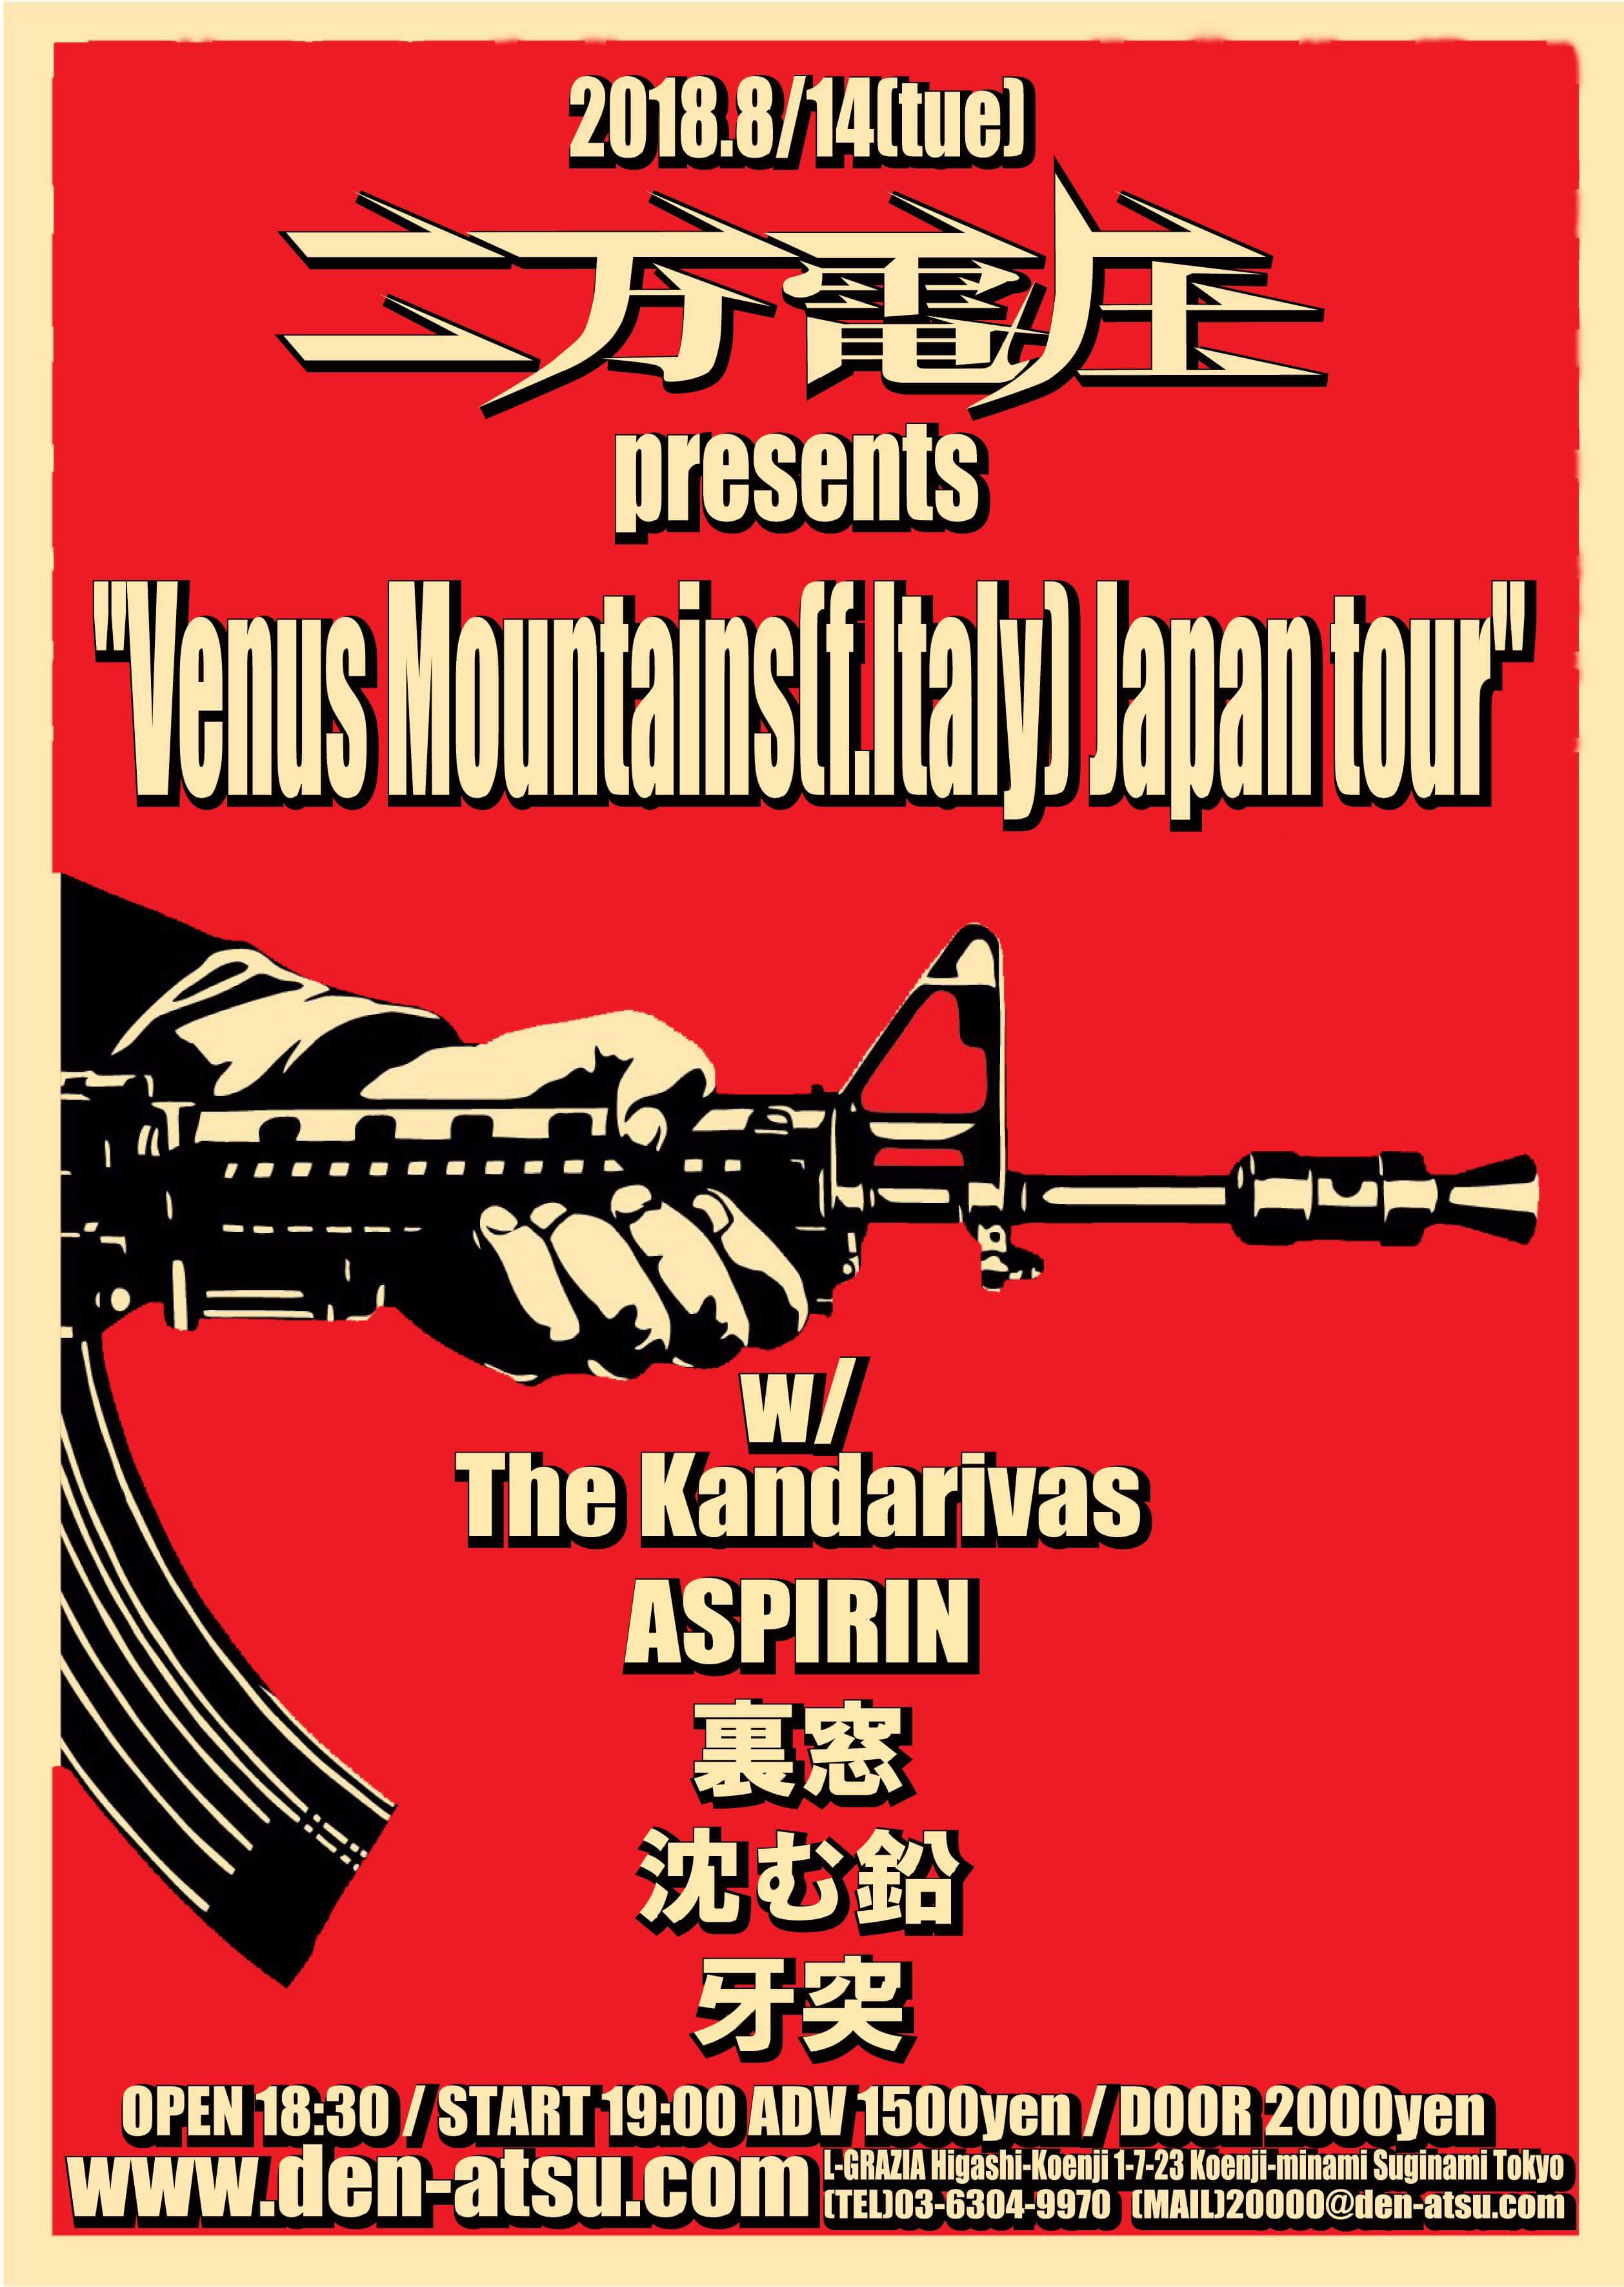 二万電圧 present Venus Mountains(f.Italy) Japan tour